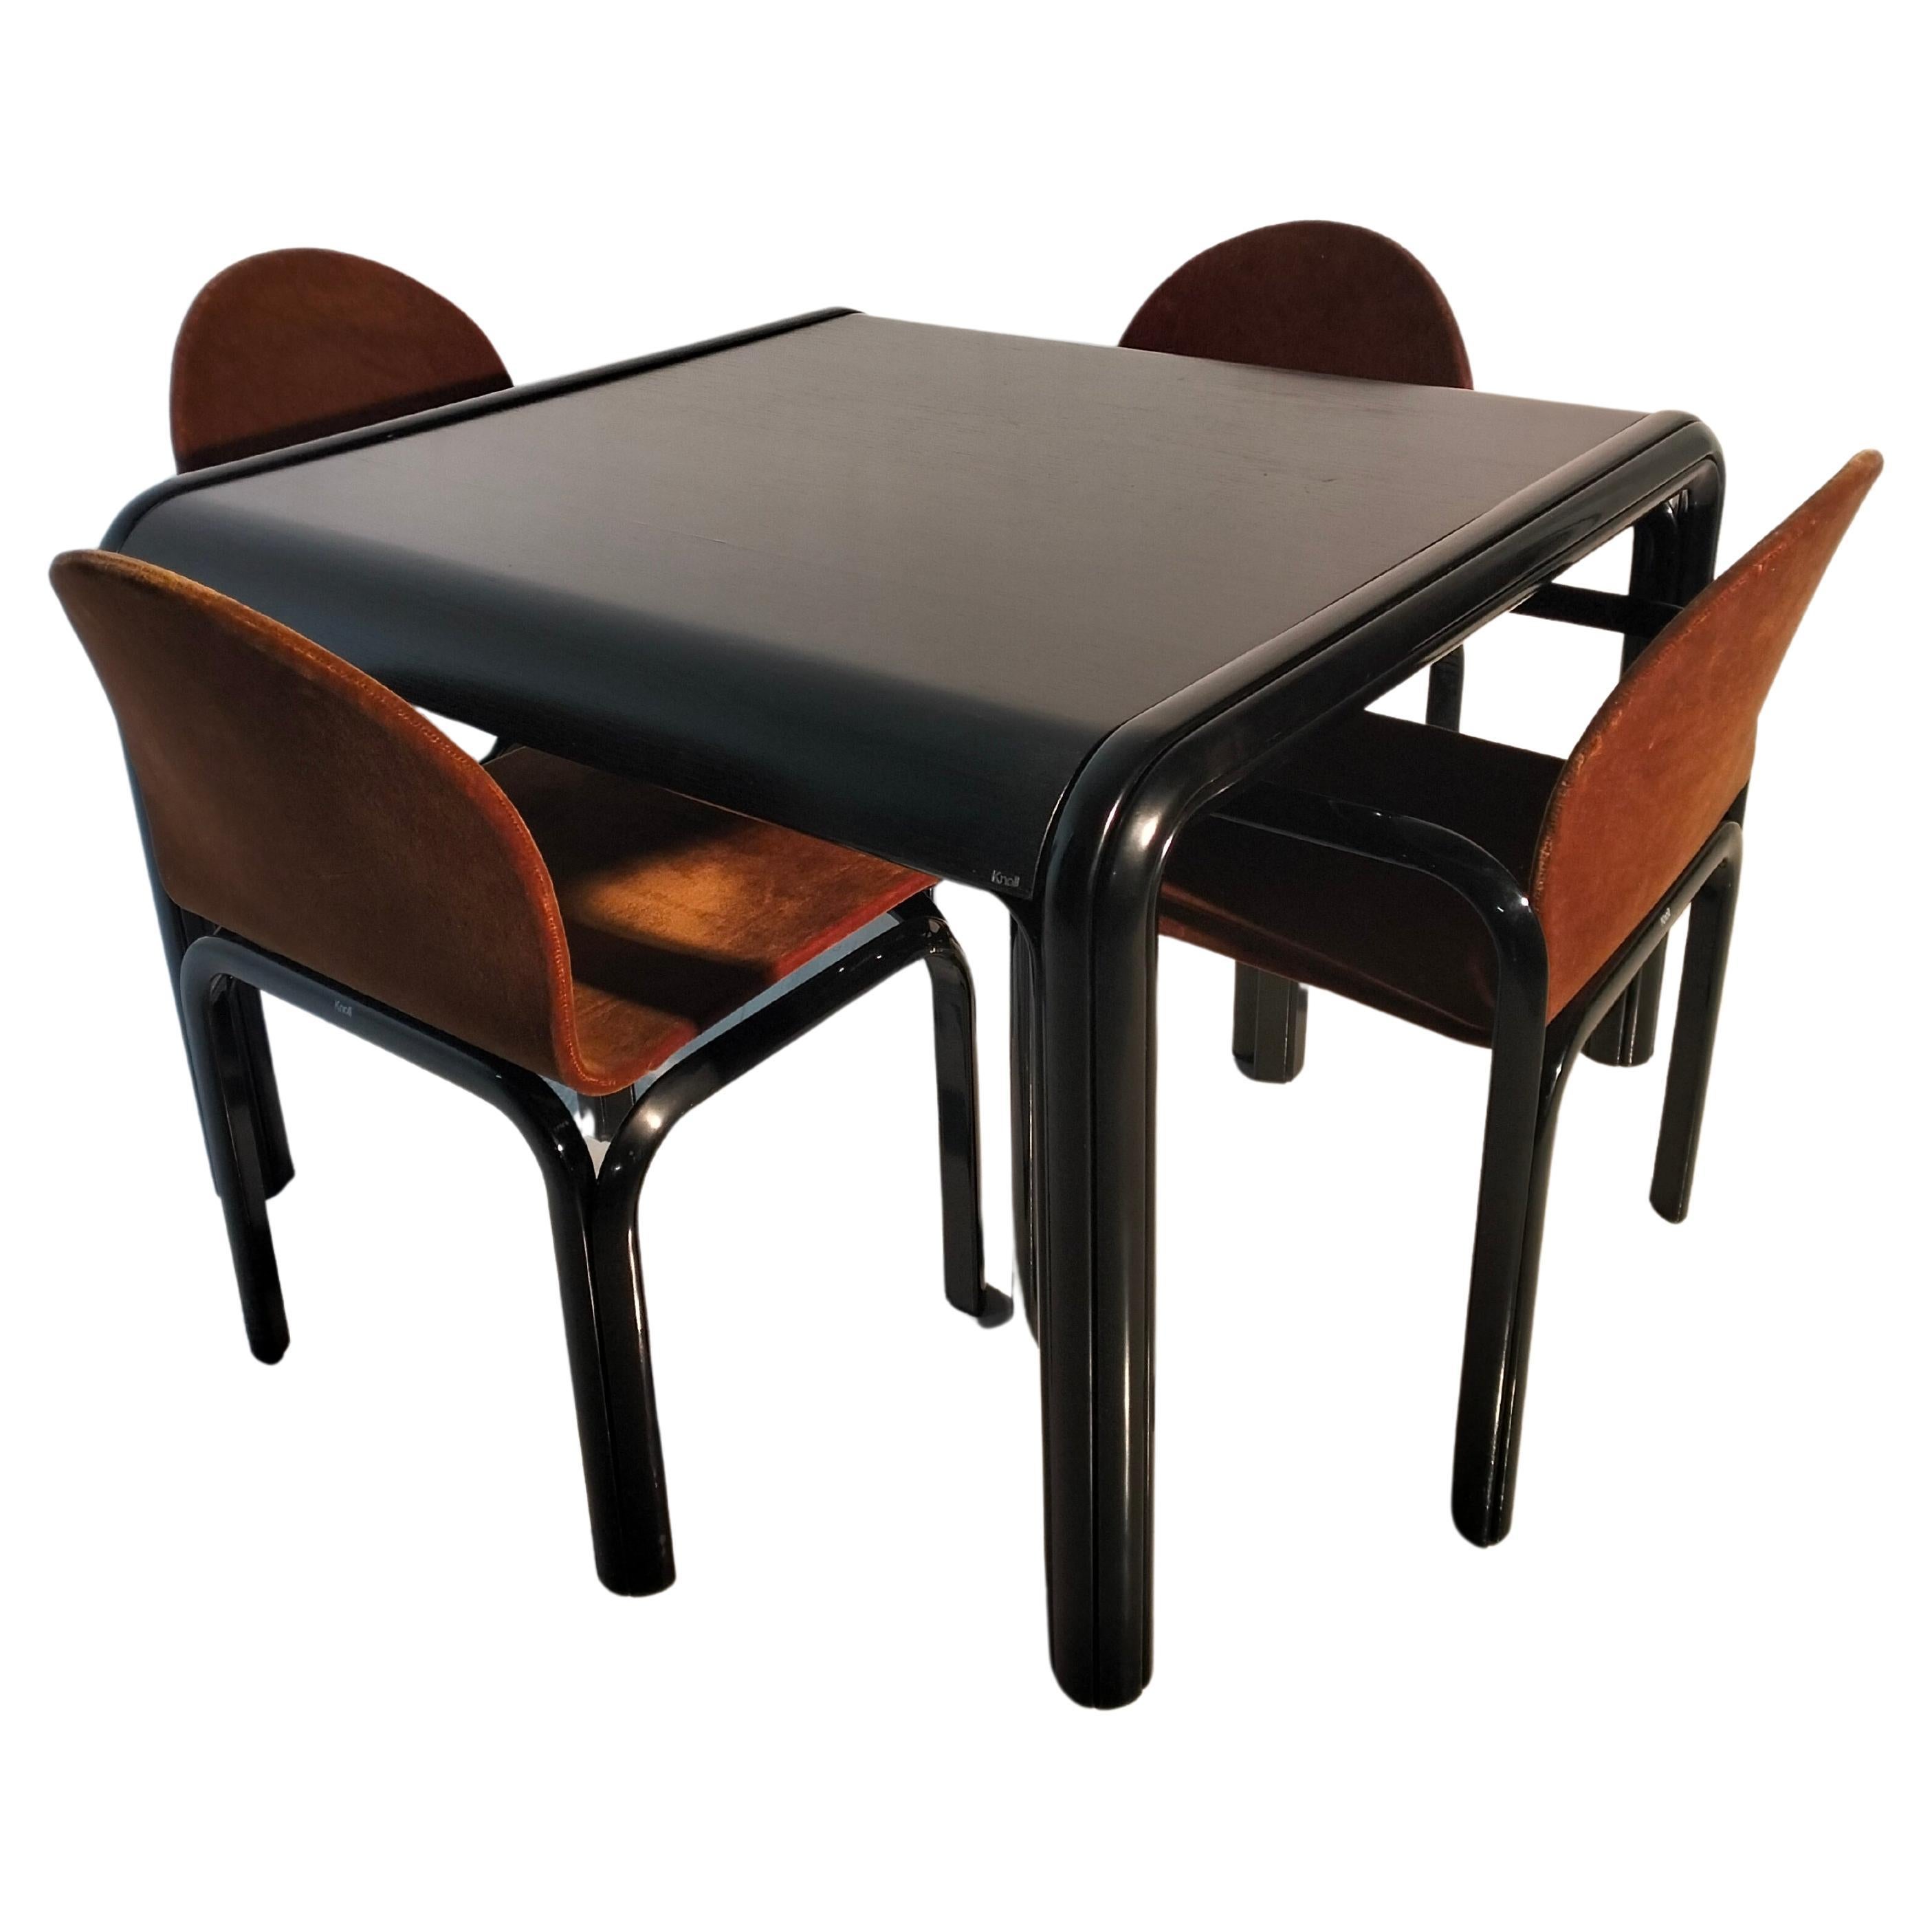 Set aus 4 Stühlen und 1 quadratischem Tisch Orsay mod. von Gae Aulenti für Knoll 80er Jahre